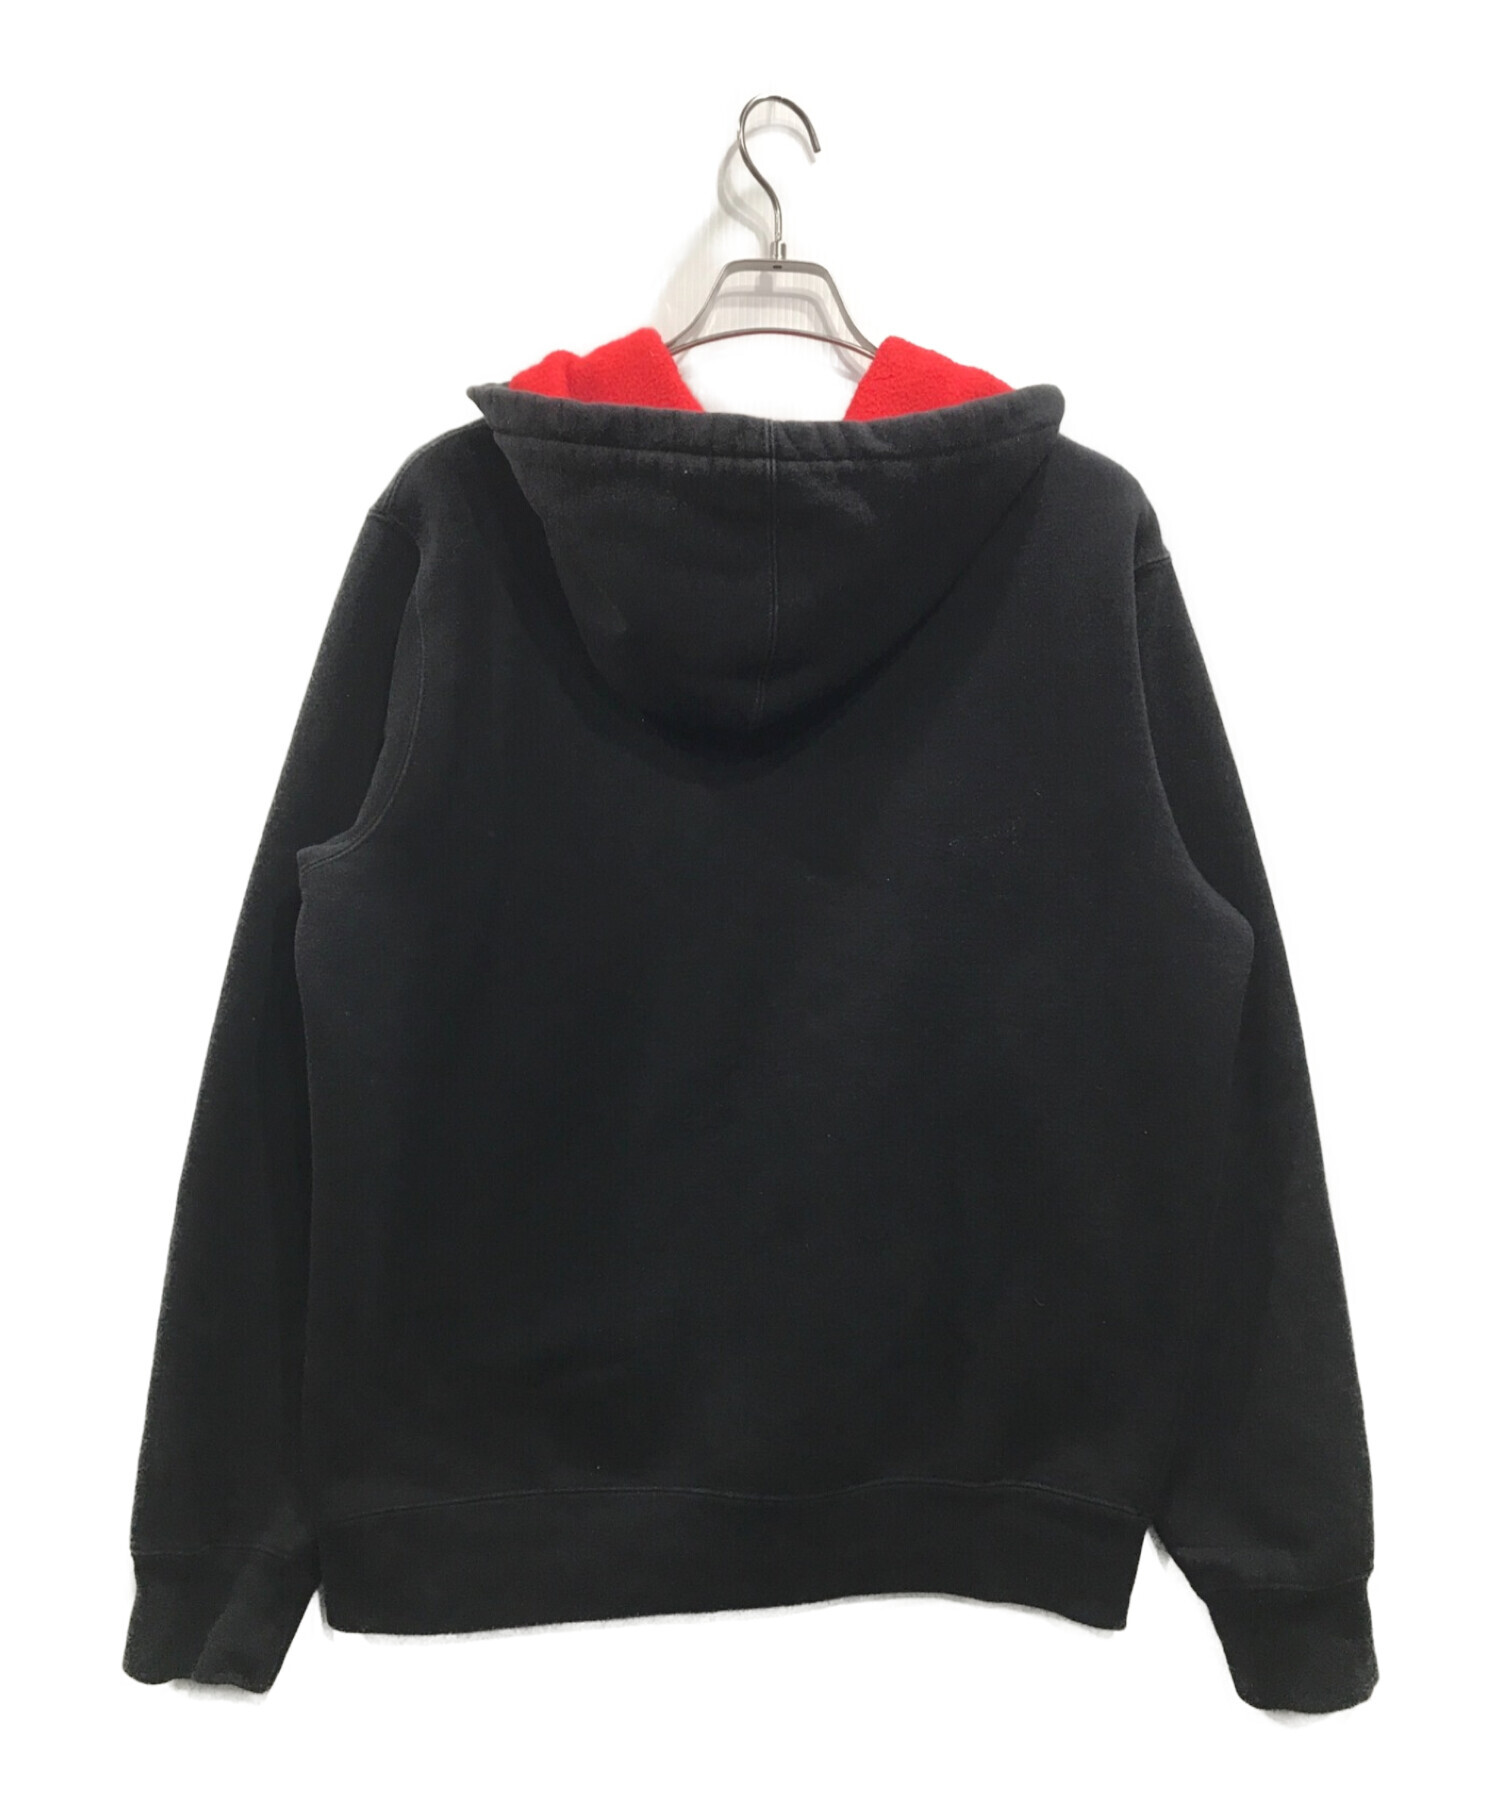 Supreme (シュプリーム) 18SS small Box Logo Zip Up Hooded Sweats ブラック サイズ:M